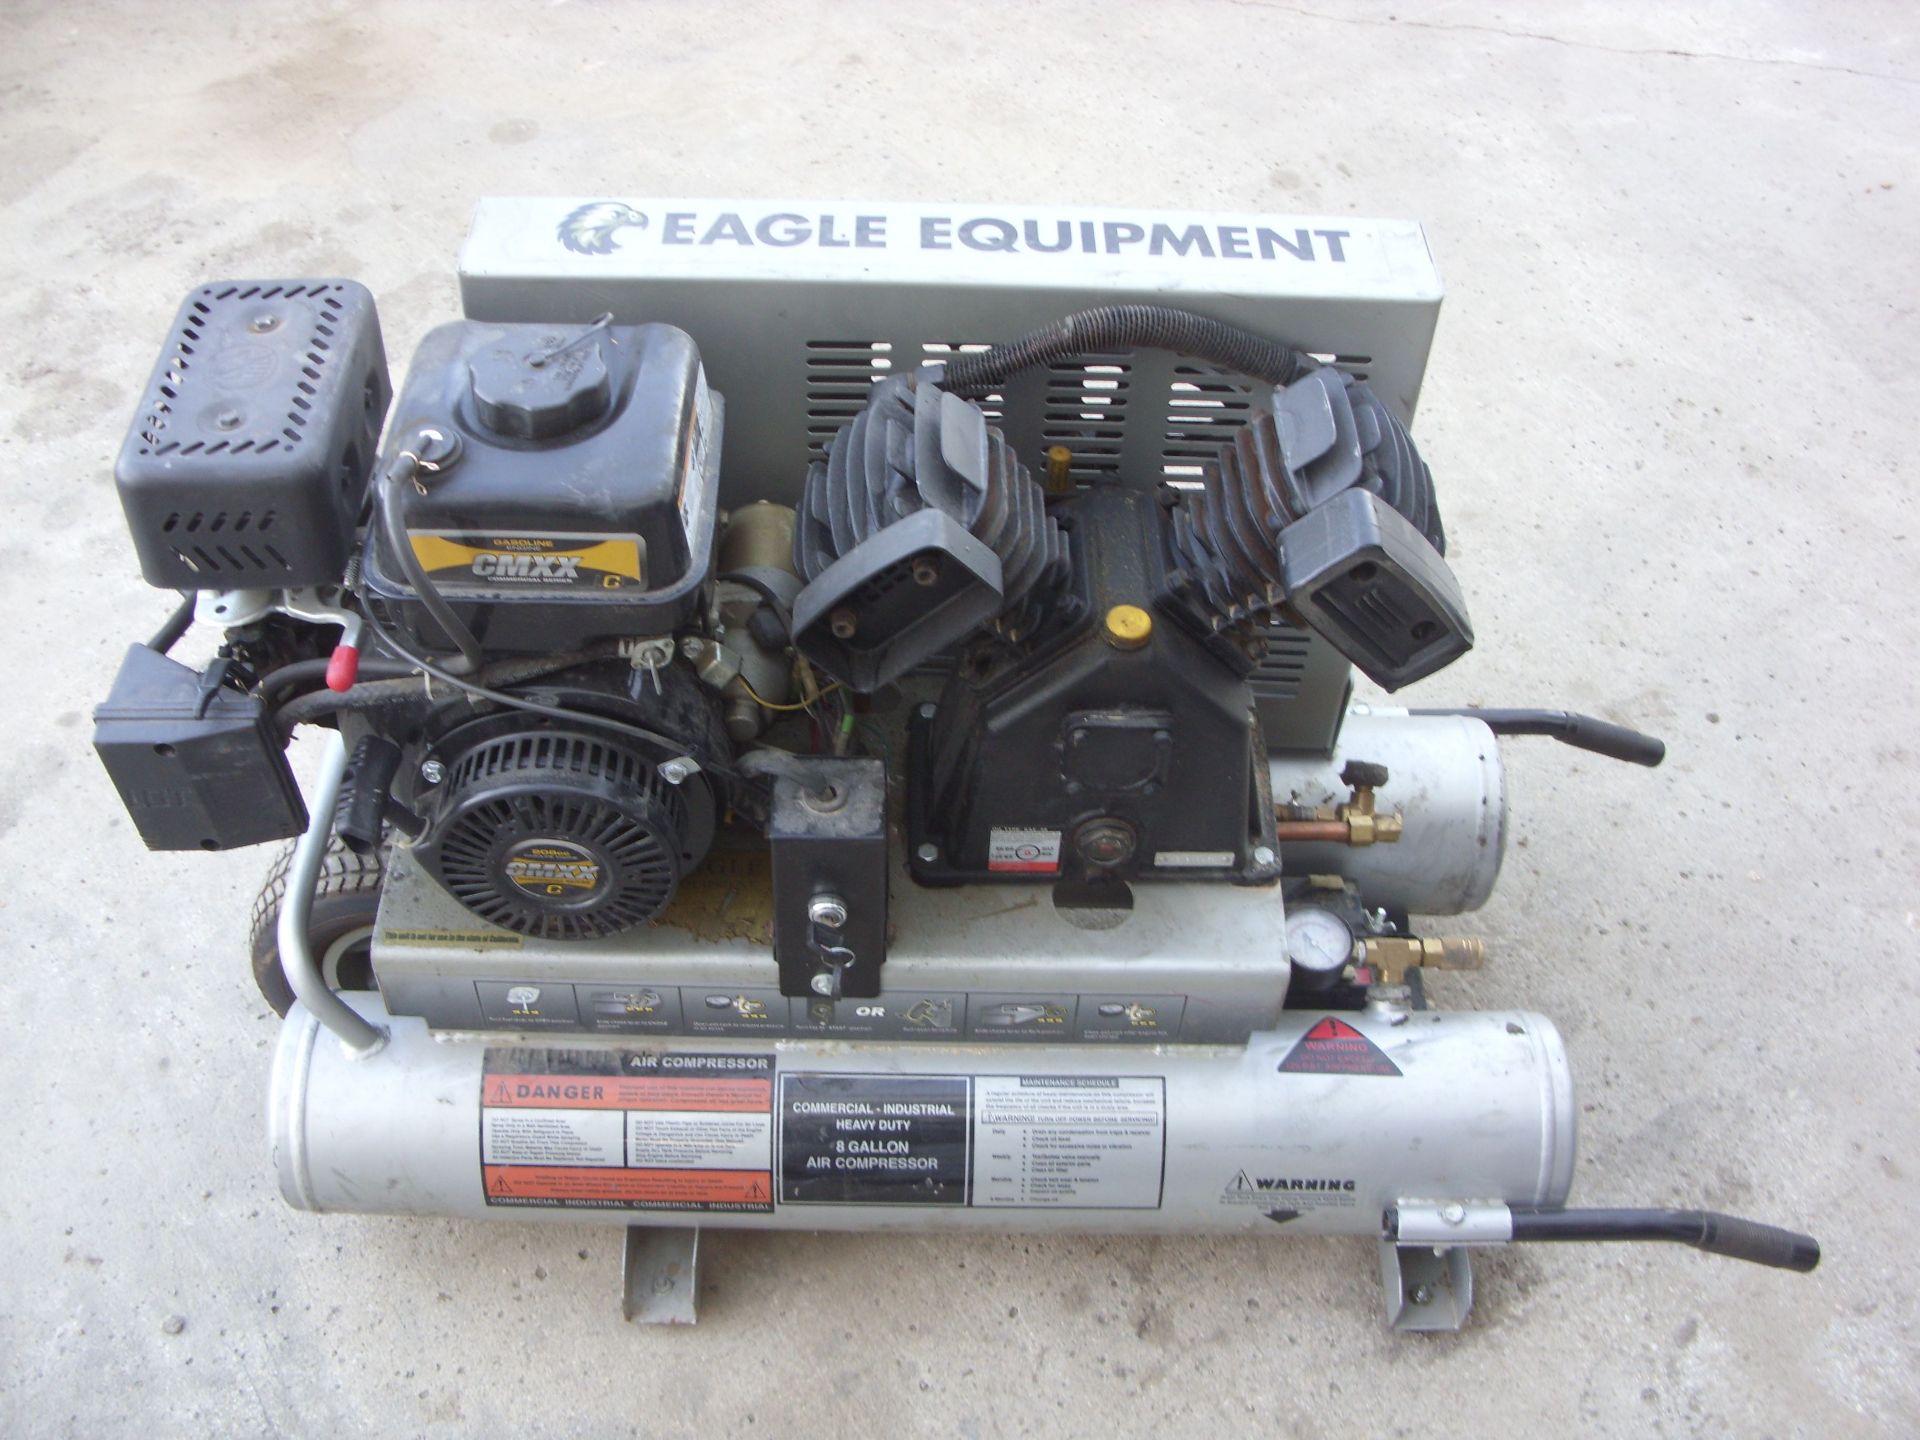 Eagle Equipment EAC-2T 208cc 8-gal gas-powered air compressor